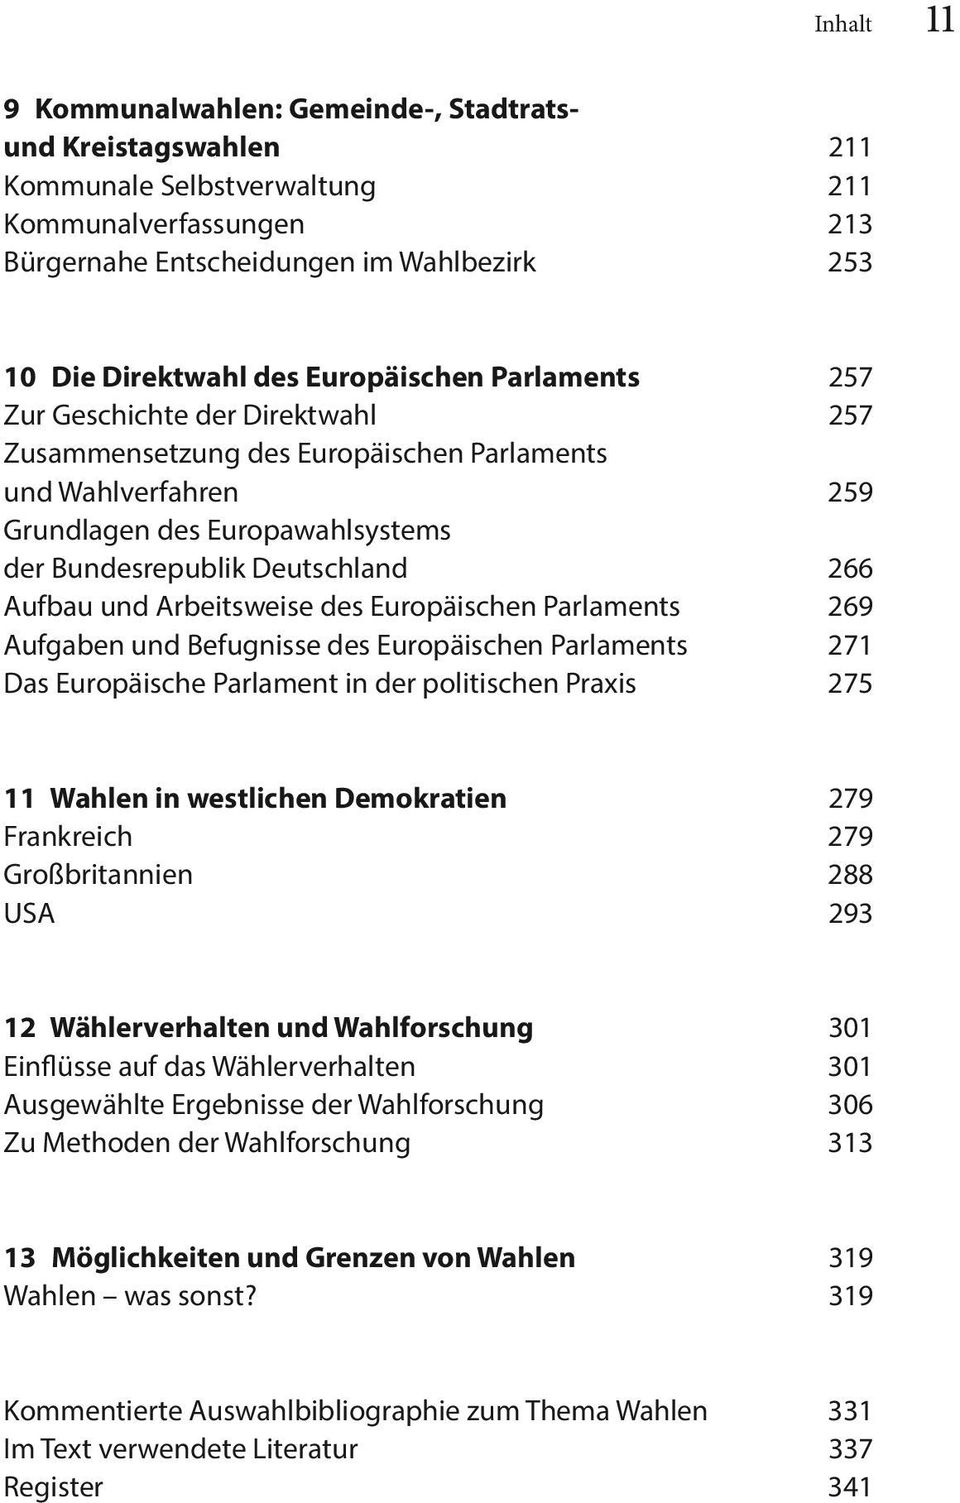 Aufbau und Arbeitsweise des Europäischen Parlaments 269 Aufgaben und Befugnisse des Europäischen Parlaments 271 Das Europäische Parlament in der politischen Praxis 275 11 Wahlen in westlichen